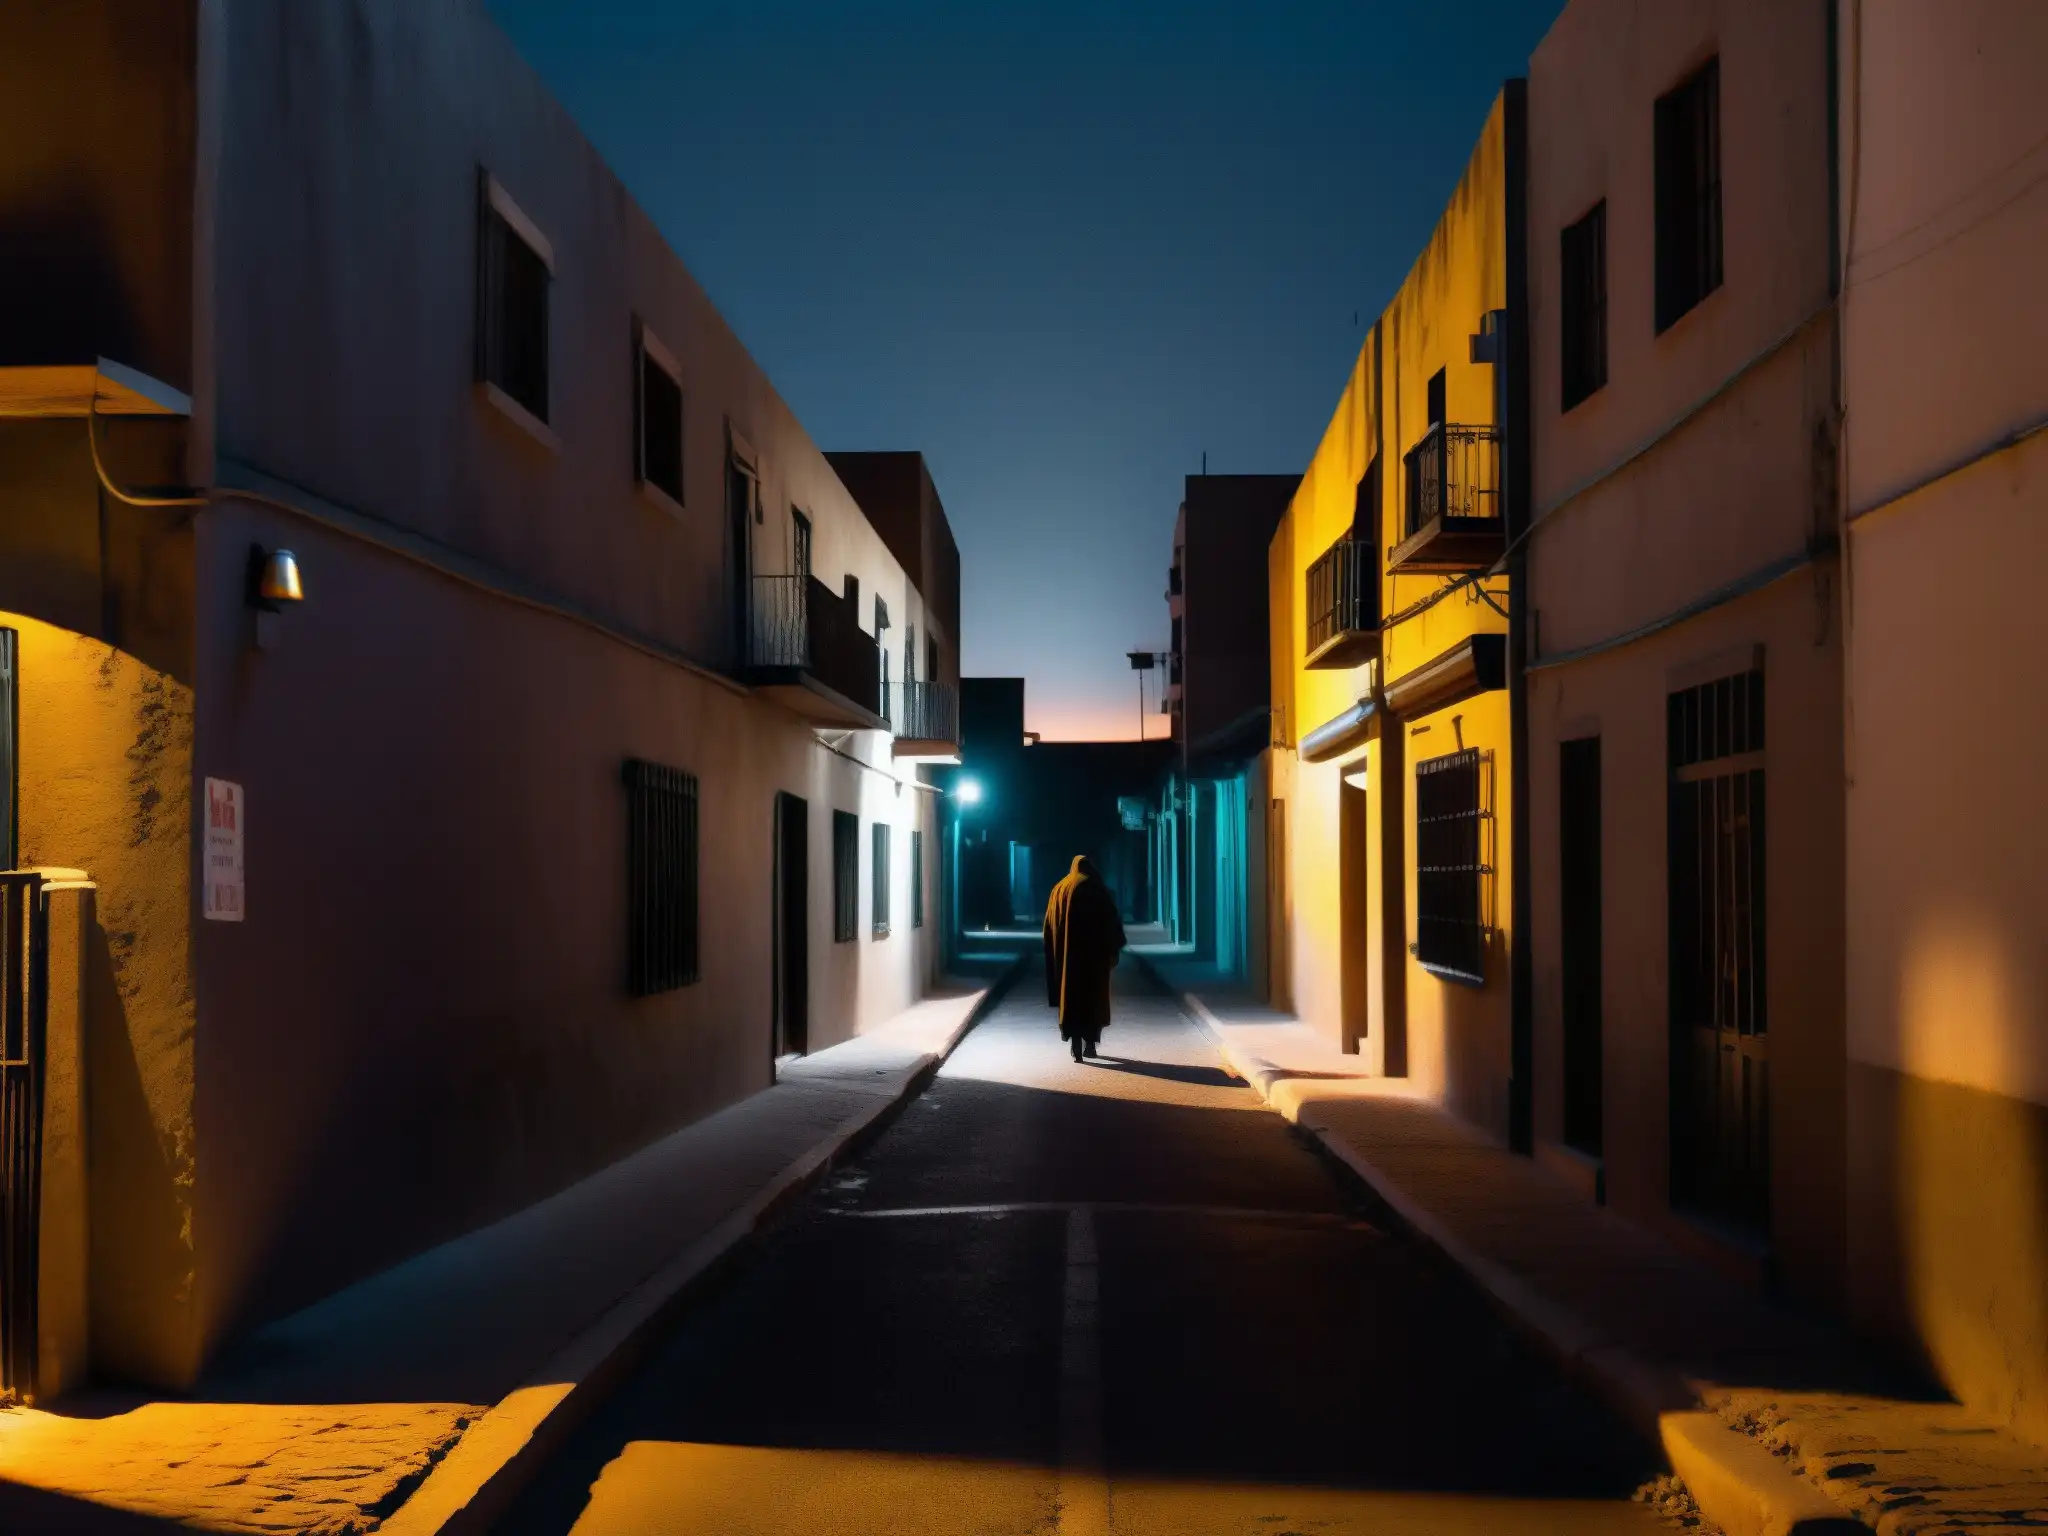 En la oscuridad de un callejón mexicano, un solitario figura se oculta entre sombras